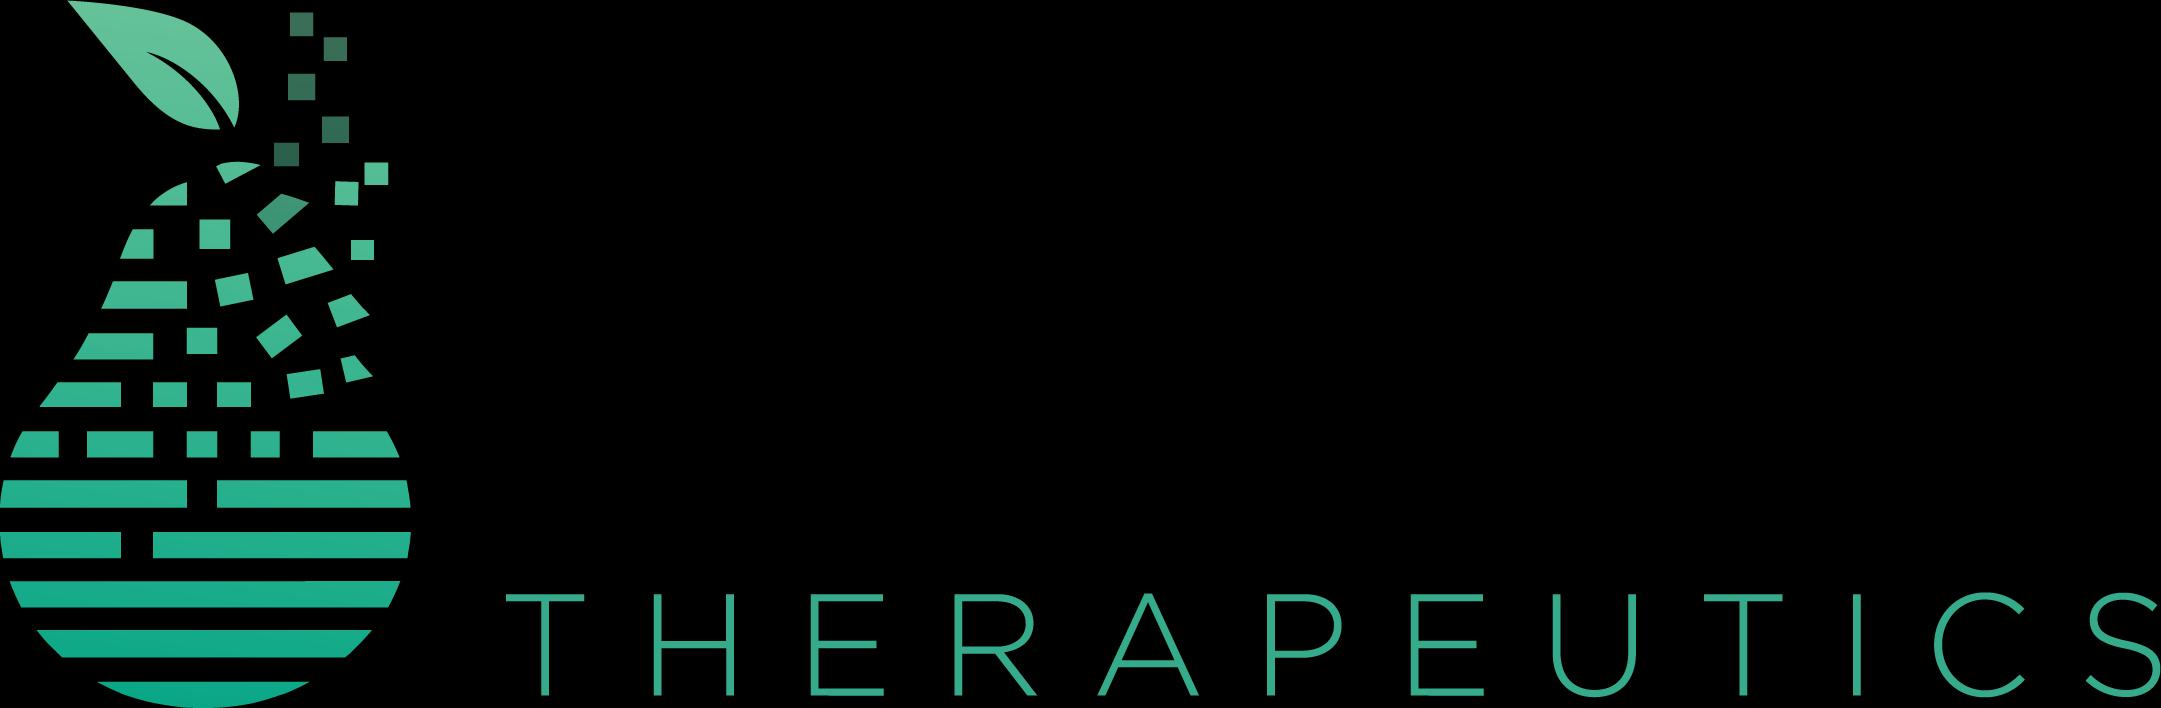 Pear Therapeutics_logo